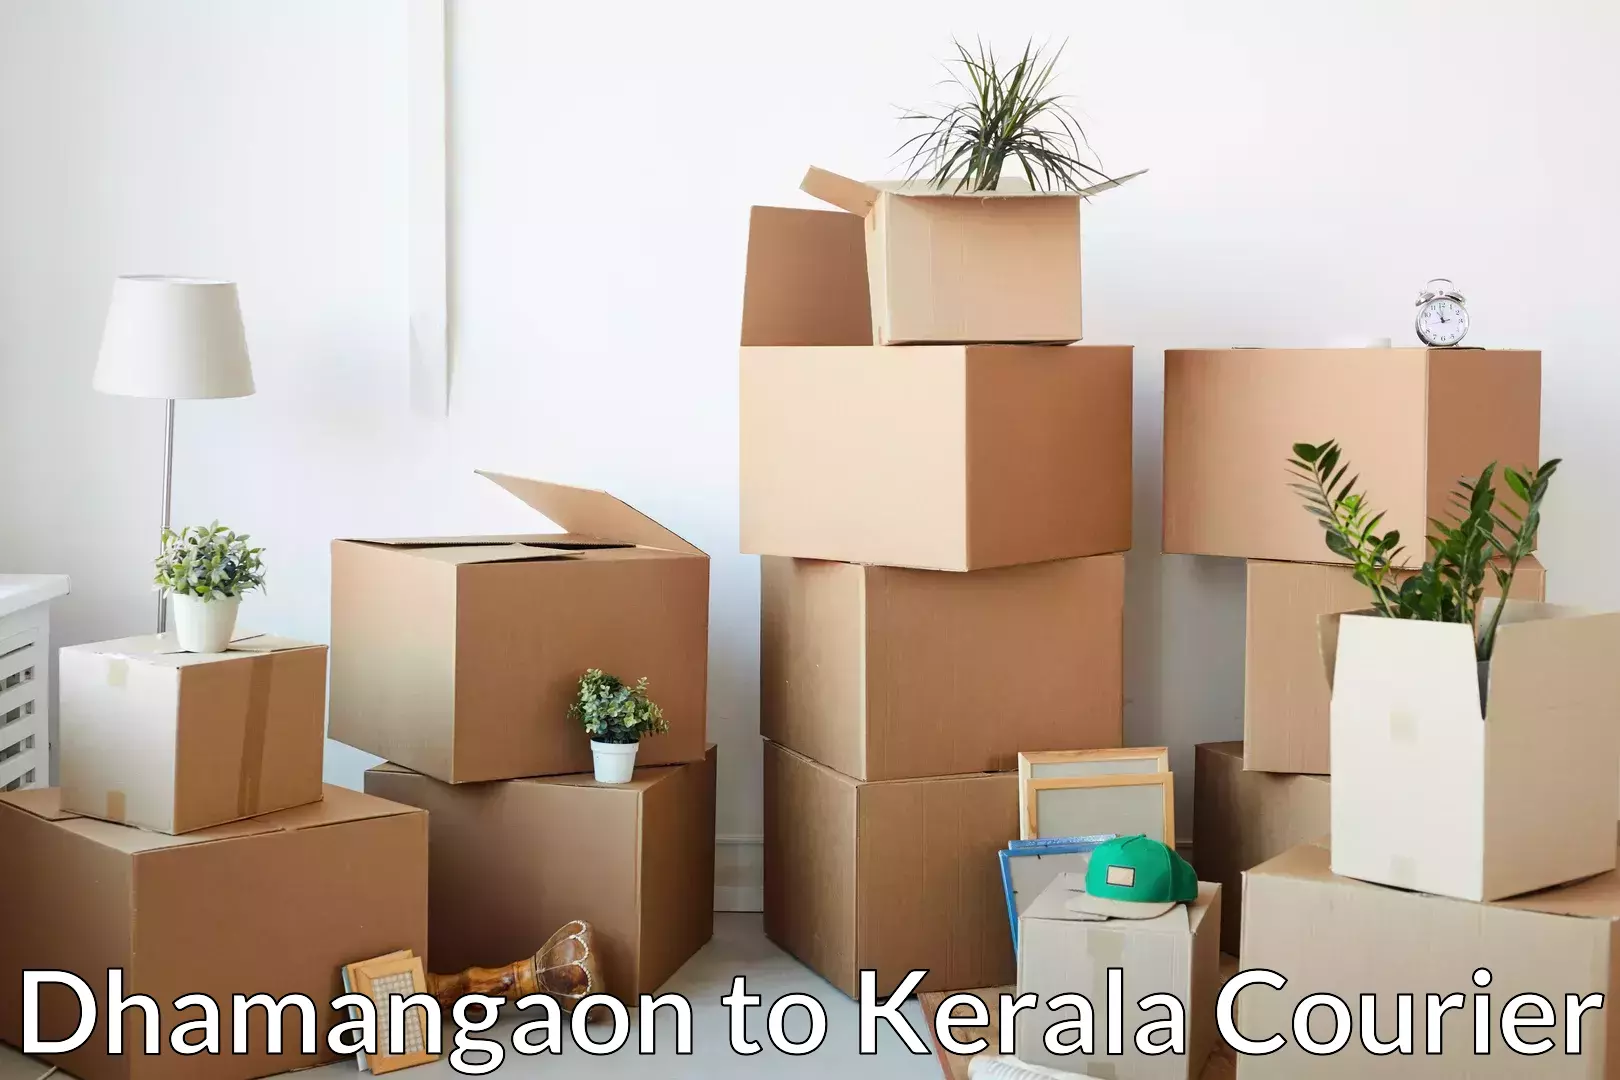 Budget-friendly movers Dhamangaon to Kuttikol